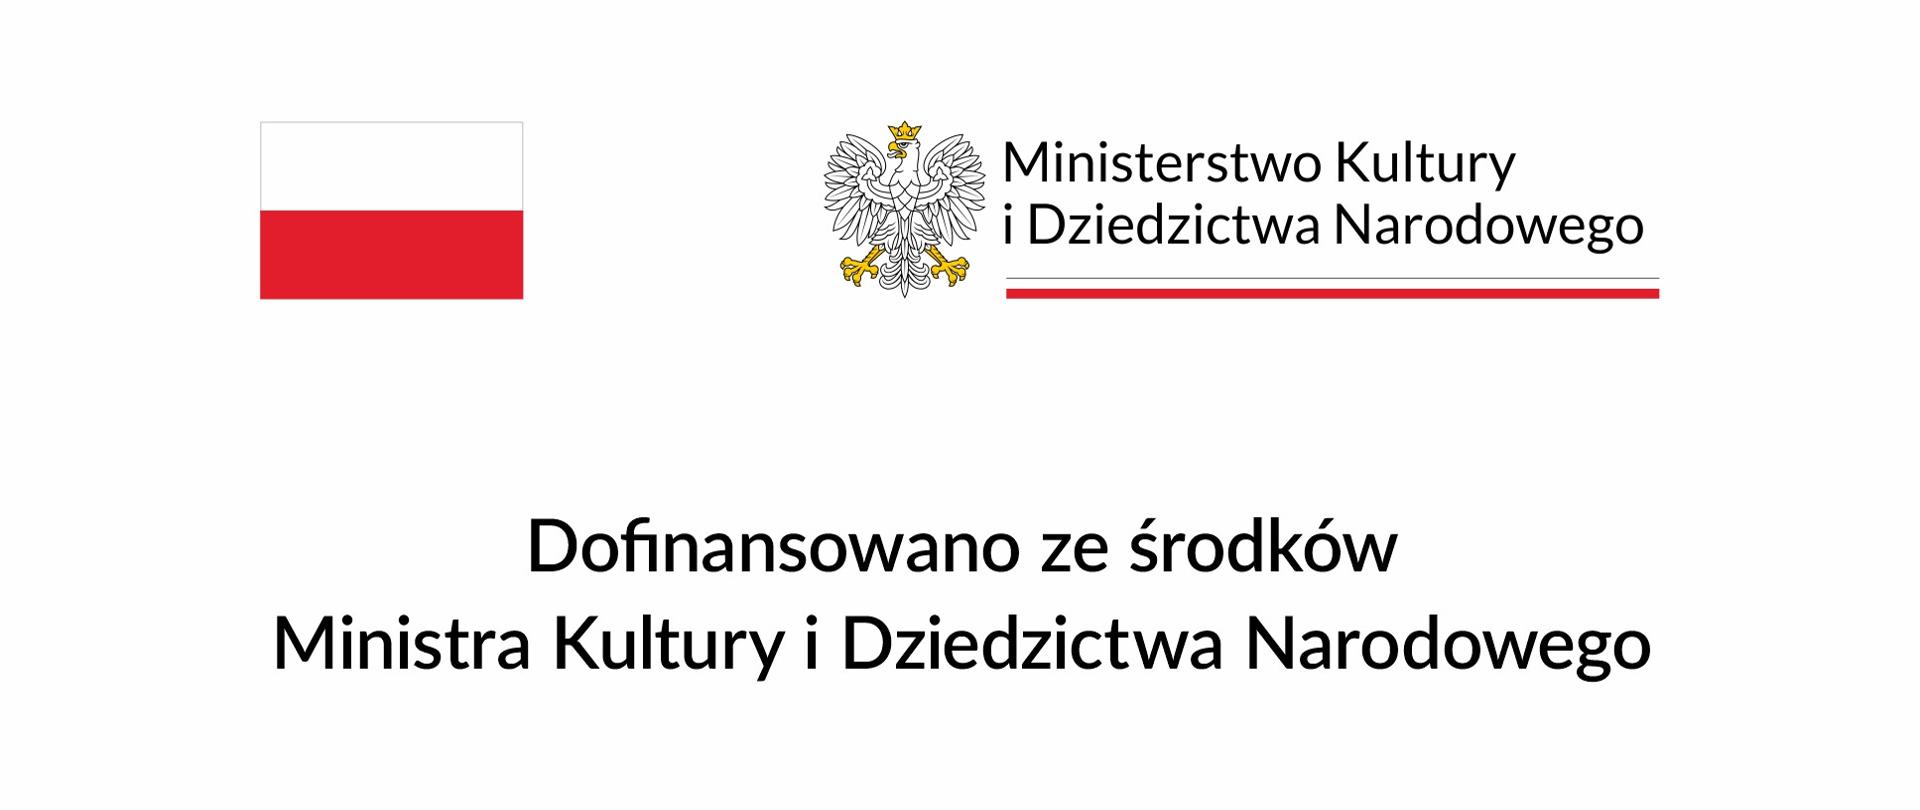 Tablica przedstawiająca napis - "Dofinansowanie ze środków Ministra Kultury i Dziedzictwa Narodowego. Na górze godło Polski I flaga Polski. 